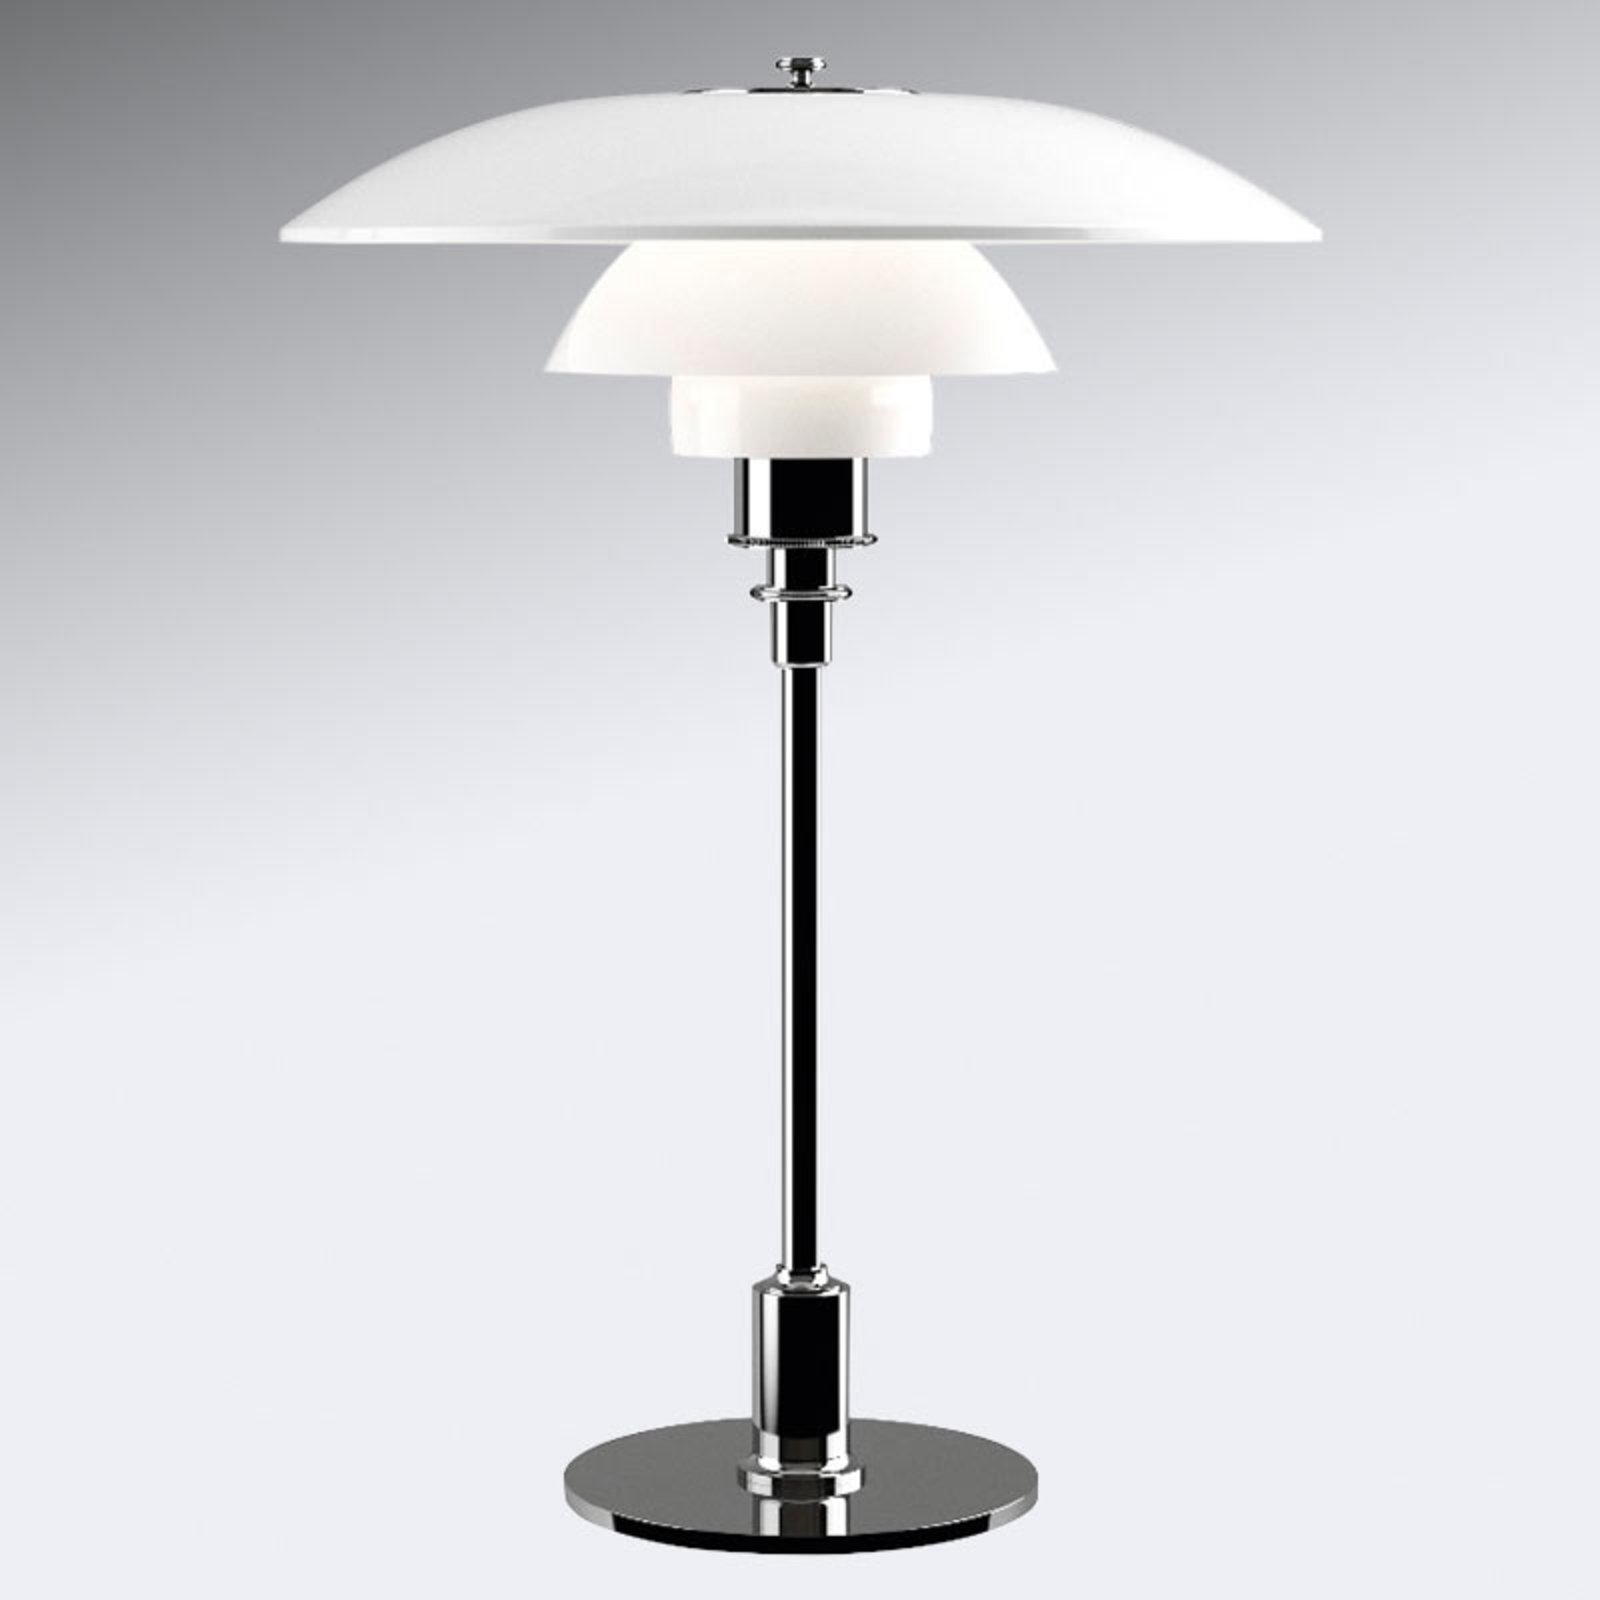 Louis Poulsen PH 3 1/2-2 1/2 table lamp chrome